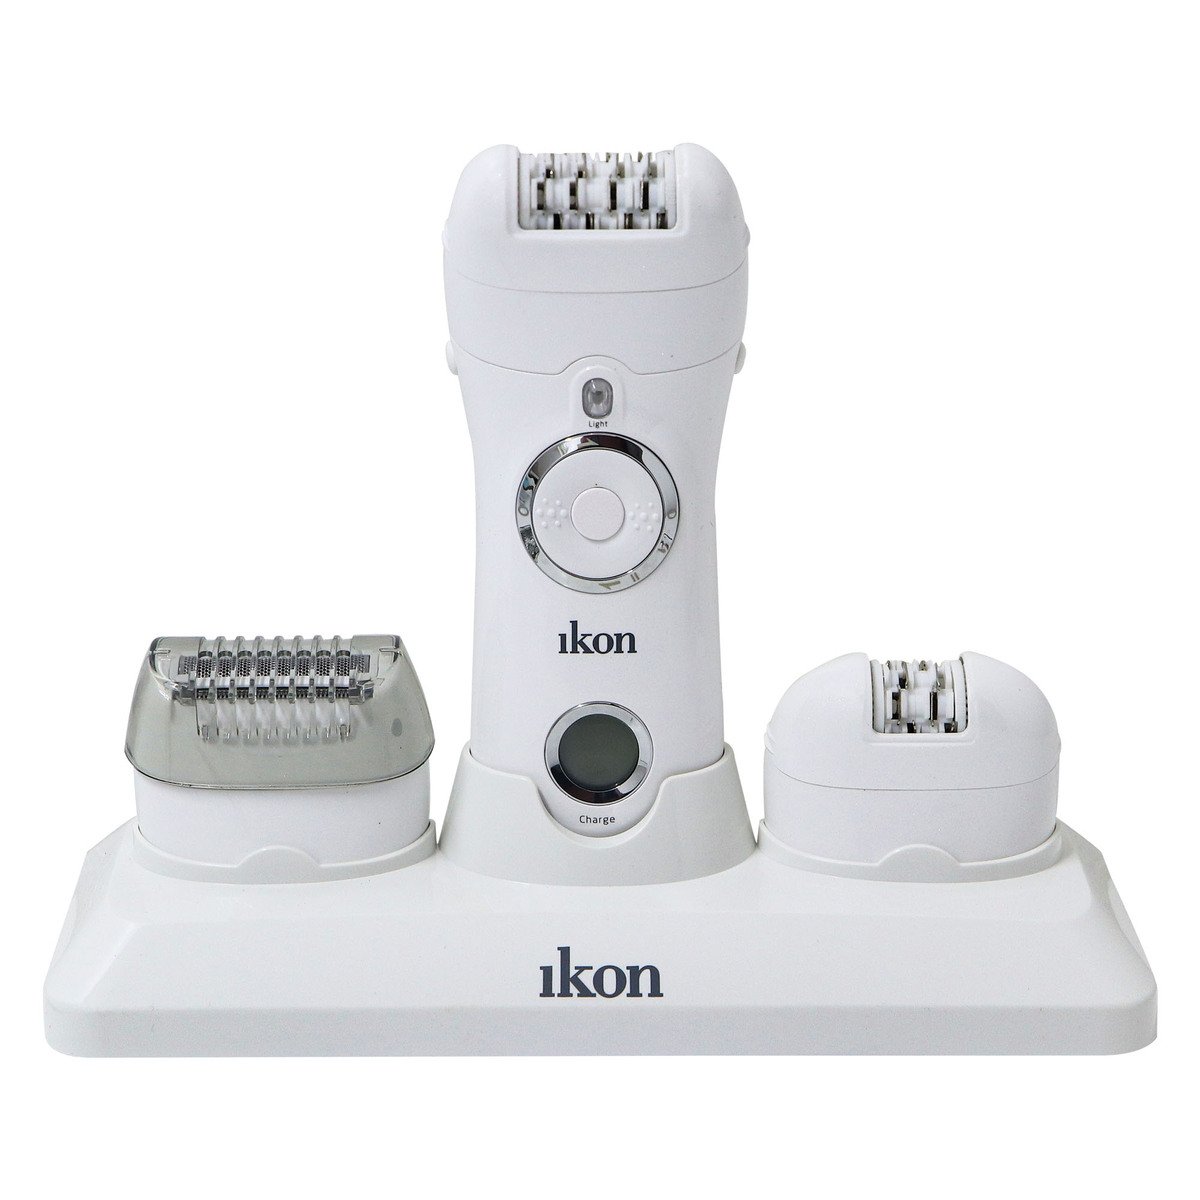 ماكينة الشعر IK-9000 من إيكون